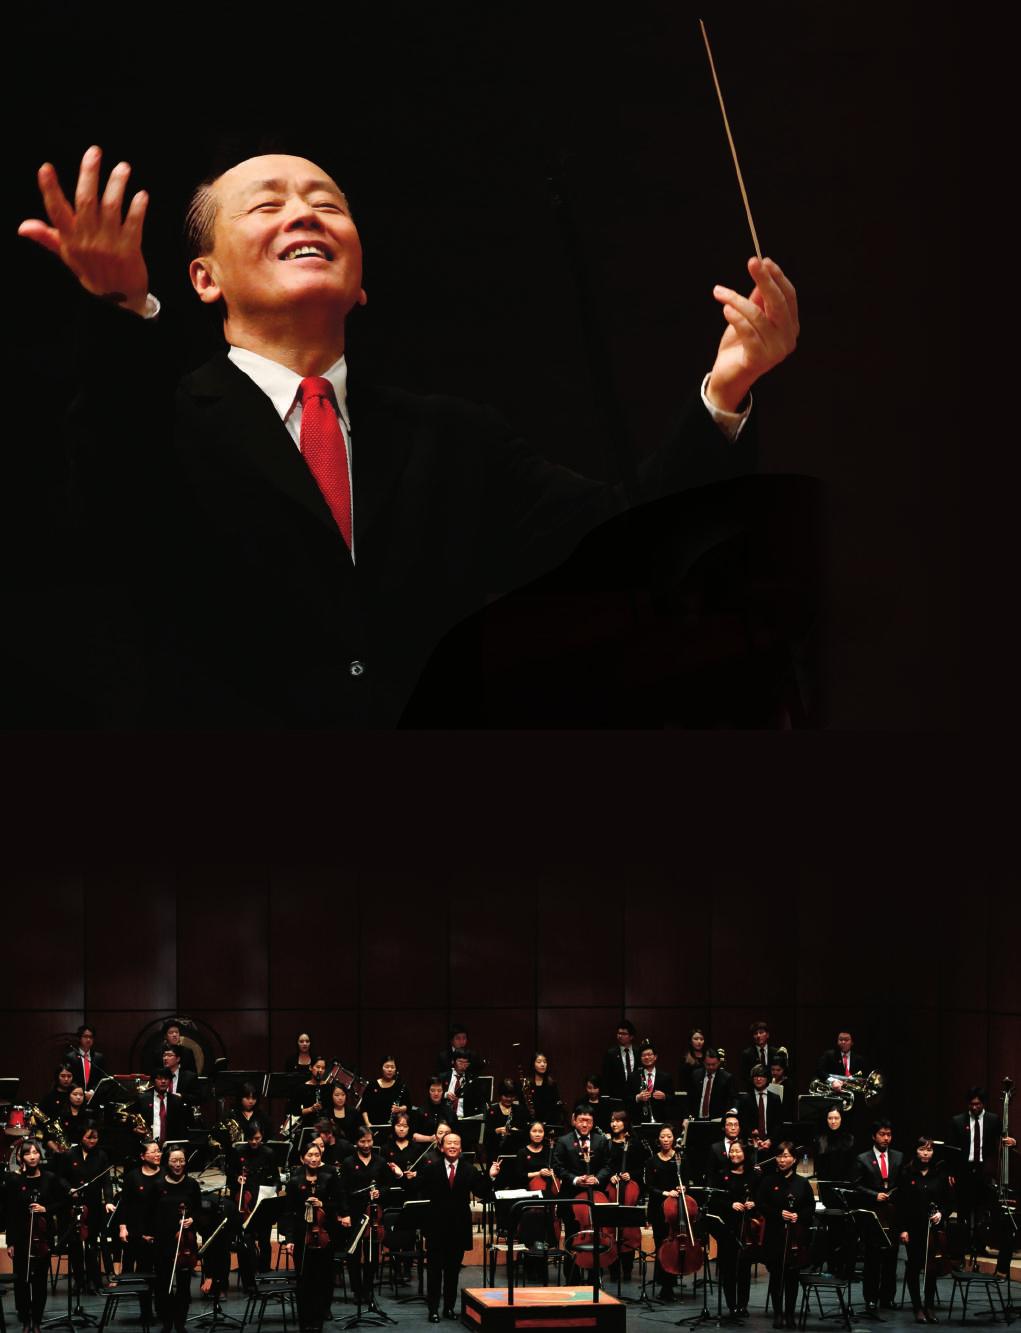 2017 포항시민과함께하는지휘자금난새와뉴월드필하모닉오케스트라의 <United Symphonies> 지휘자 _ 금난새 (Maestro Gum Nanse) 피아니스트 _